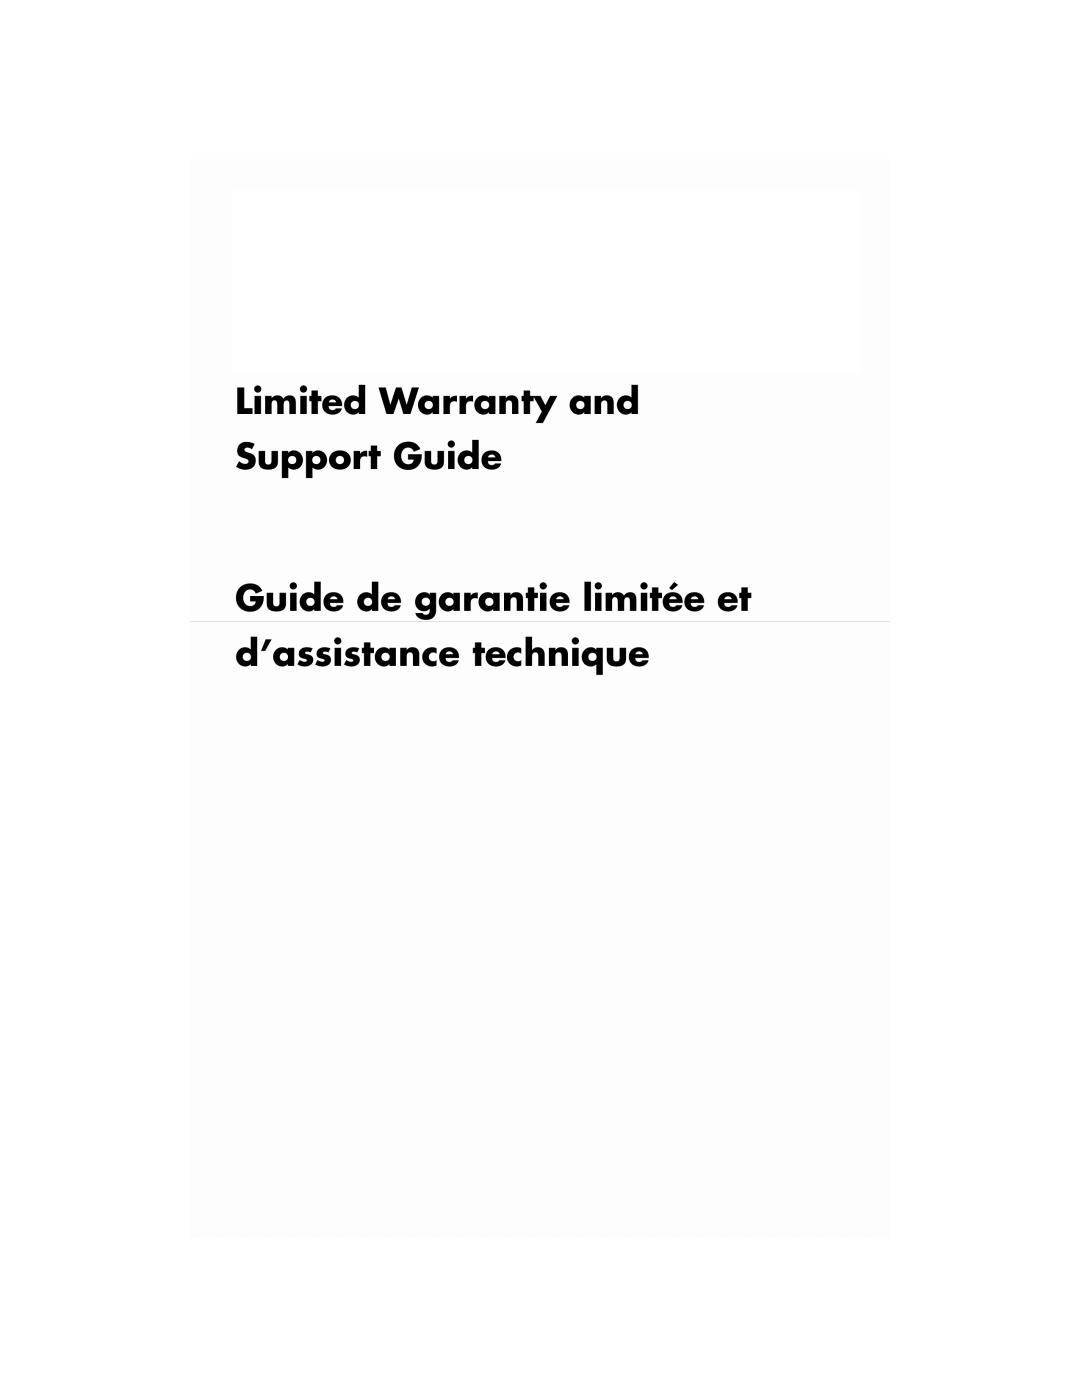 HP CQ5705P, CQ5720F, CQ5715F manual Limited Warranty and Support Guide, Guide de garantie limitée et d’assistance technique 